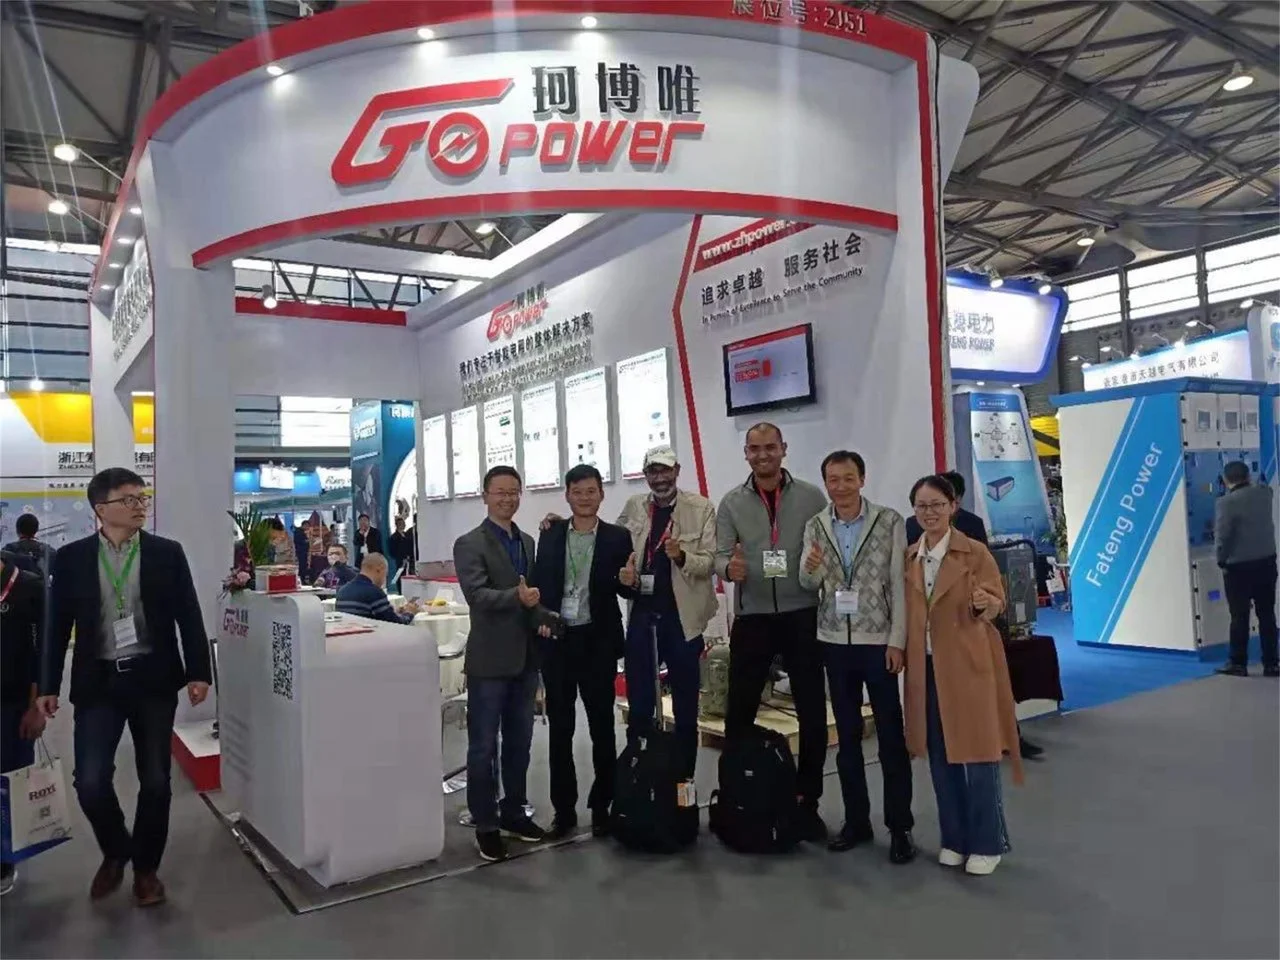 12 वीं शंघाई अंतर्राष्ट्रीय बिजली उपकरण और प्रौद्योगिकी प्रदर्शनी